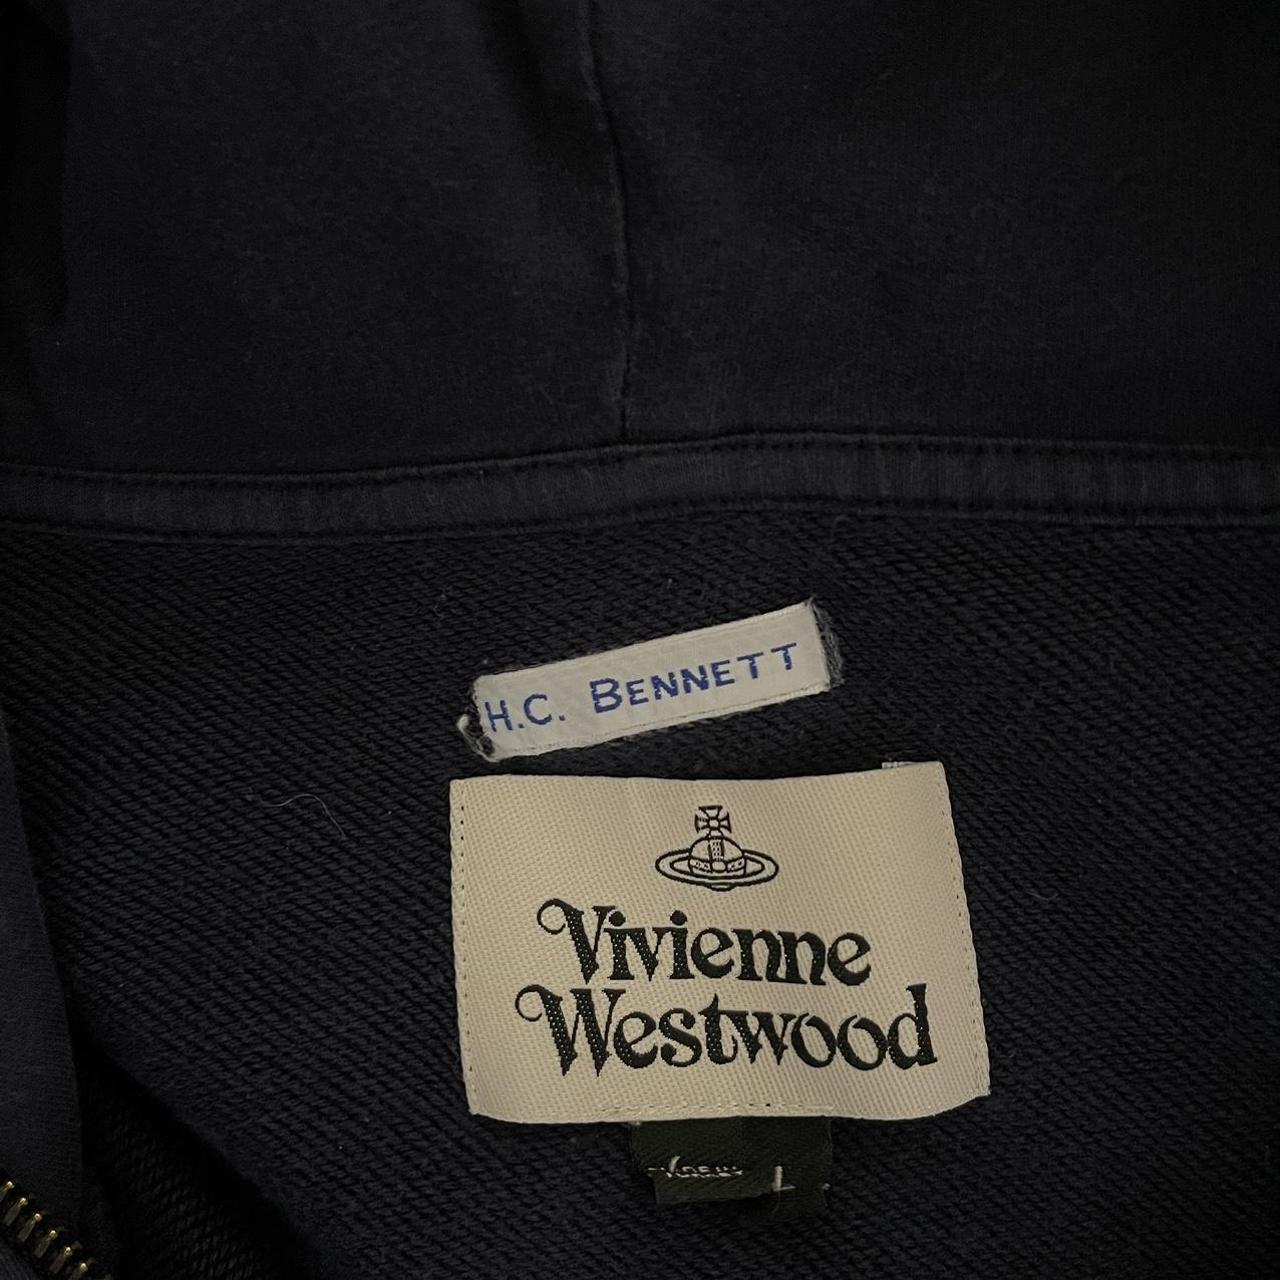 Vivienne Westwood zip hoodie 8/10 condition... - Depop